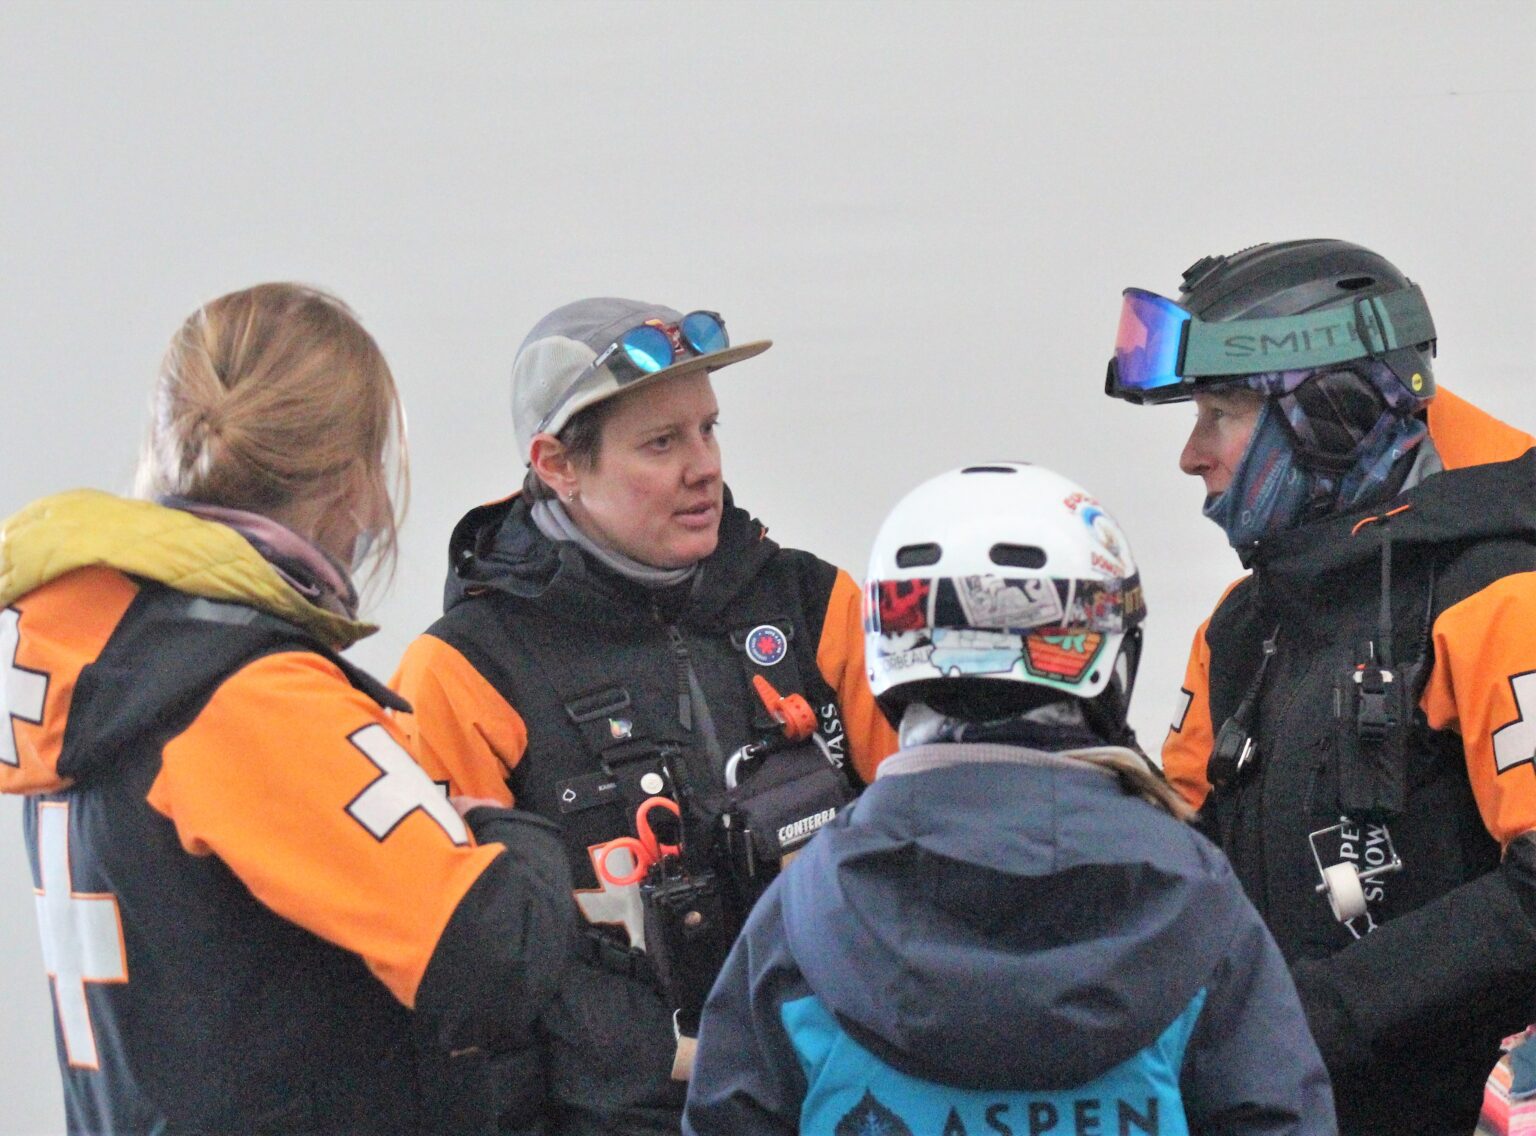 Ski patrollers Whitney Wickens